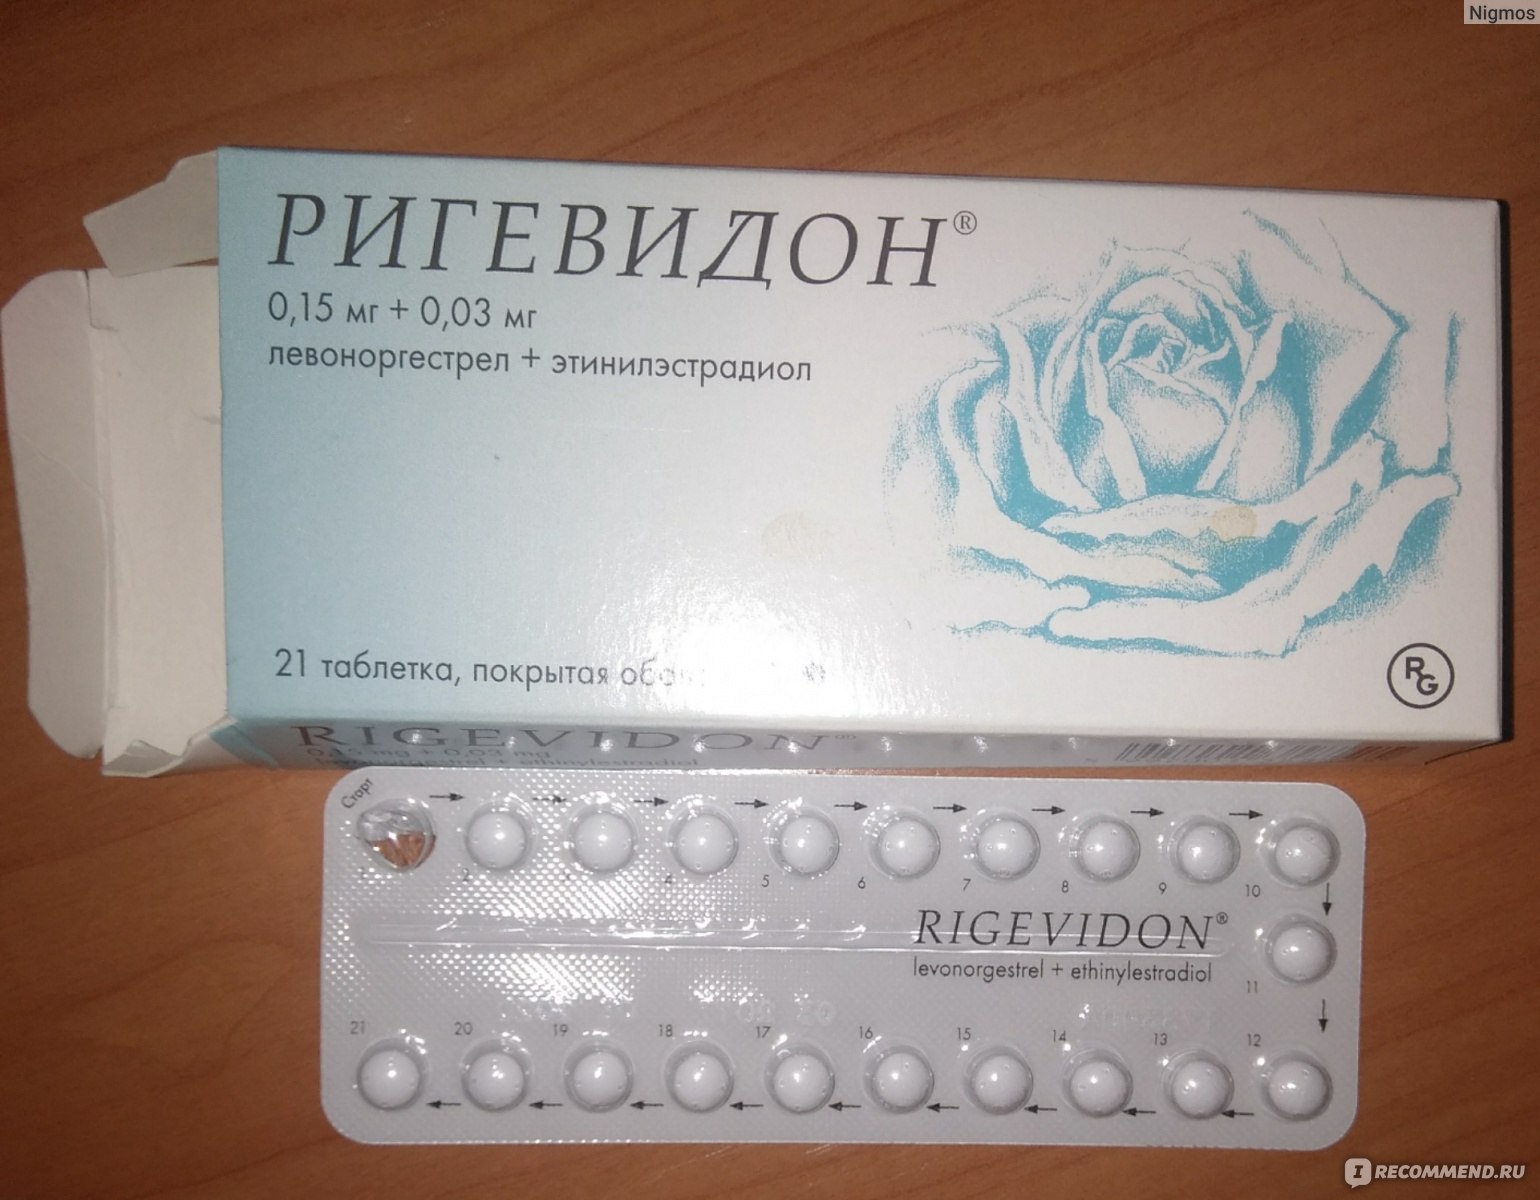 Противозачаточное 24 часа. Противозачаточные таблетки ригевидон. Гормональный препарат ригевидон. Противозачаточные таблетки для женщин ригевидон. Таблетки противозачаточные реговидон.